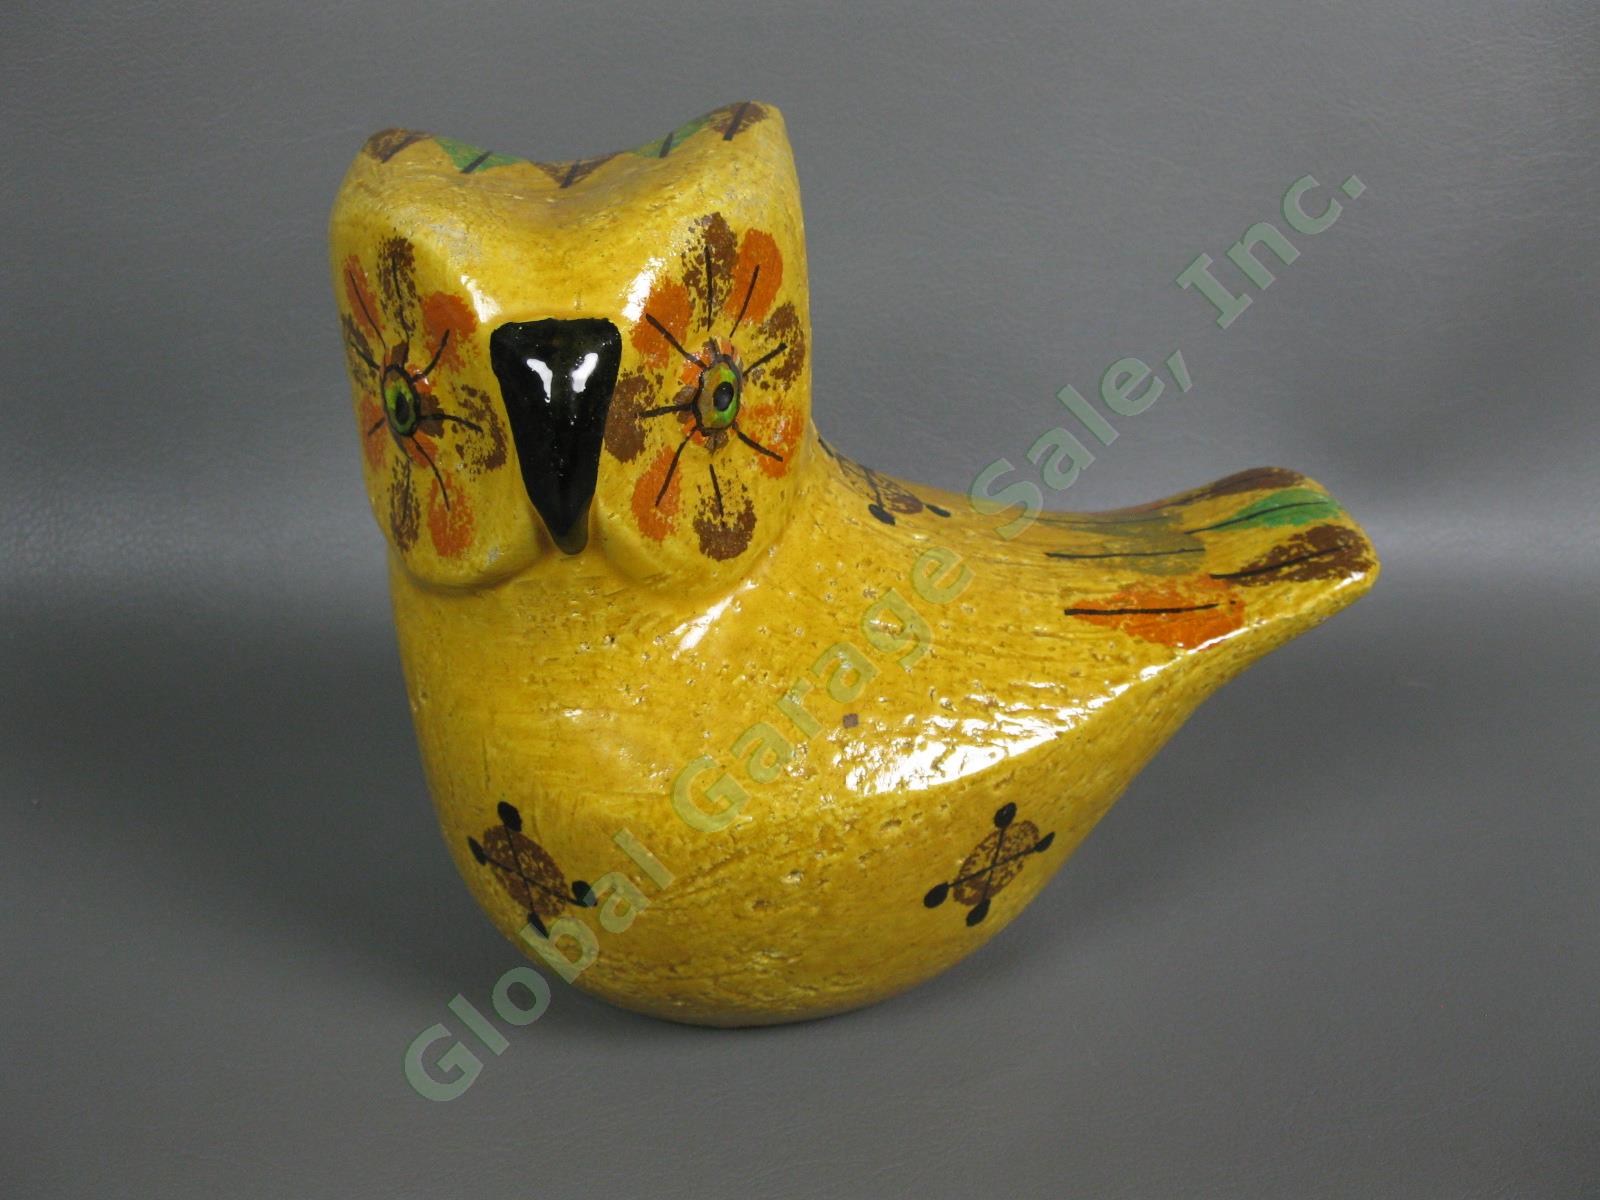 Rosenthal Netter Ceramic Owl Aldo Londi Raymor Bitossi Mid Century Modern Figure